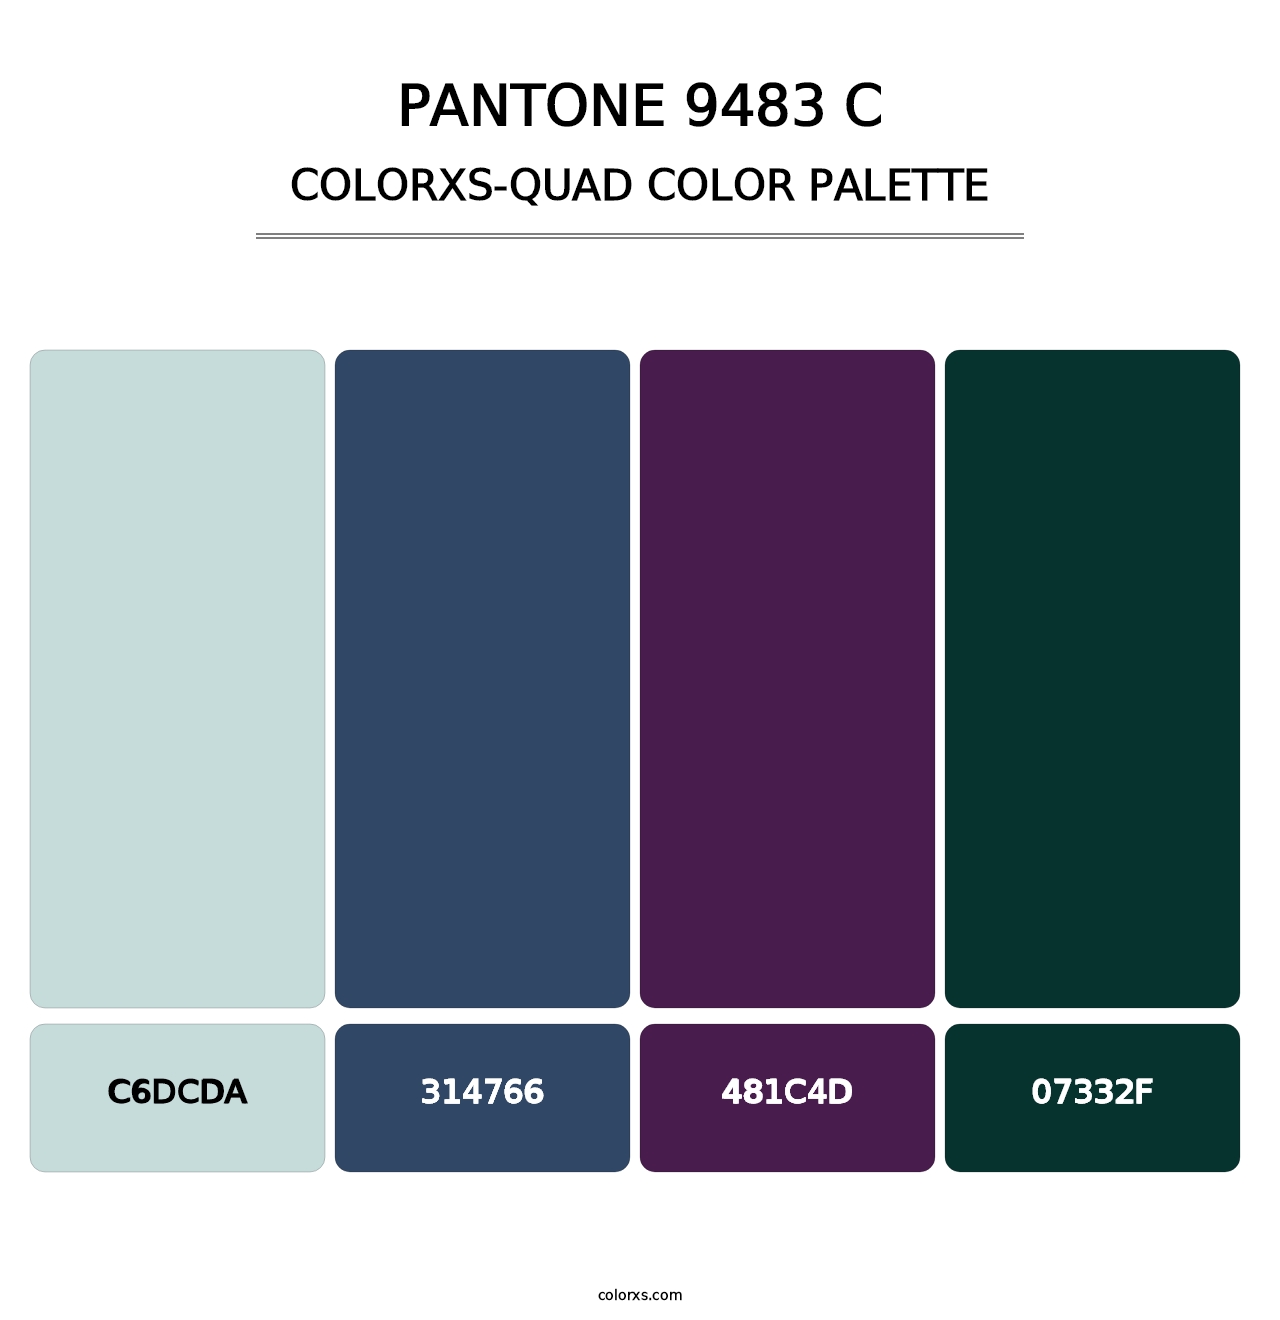 PANTONE 9483 C - Colorxs Quad Palette